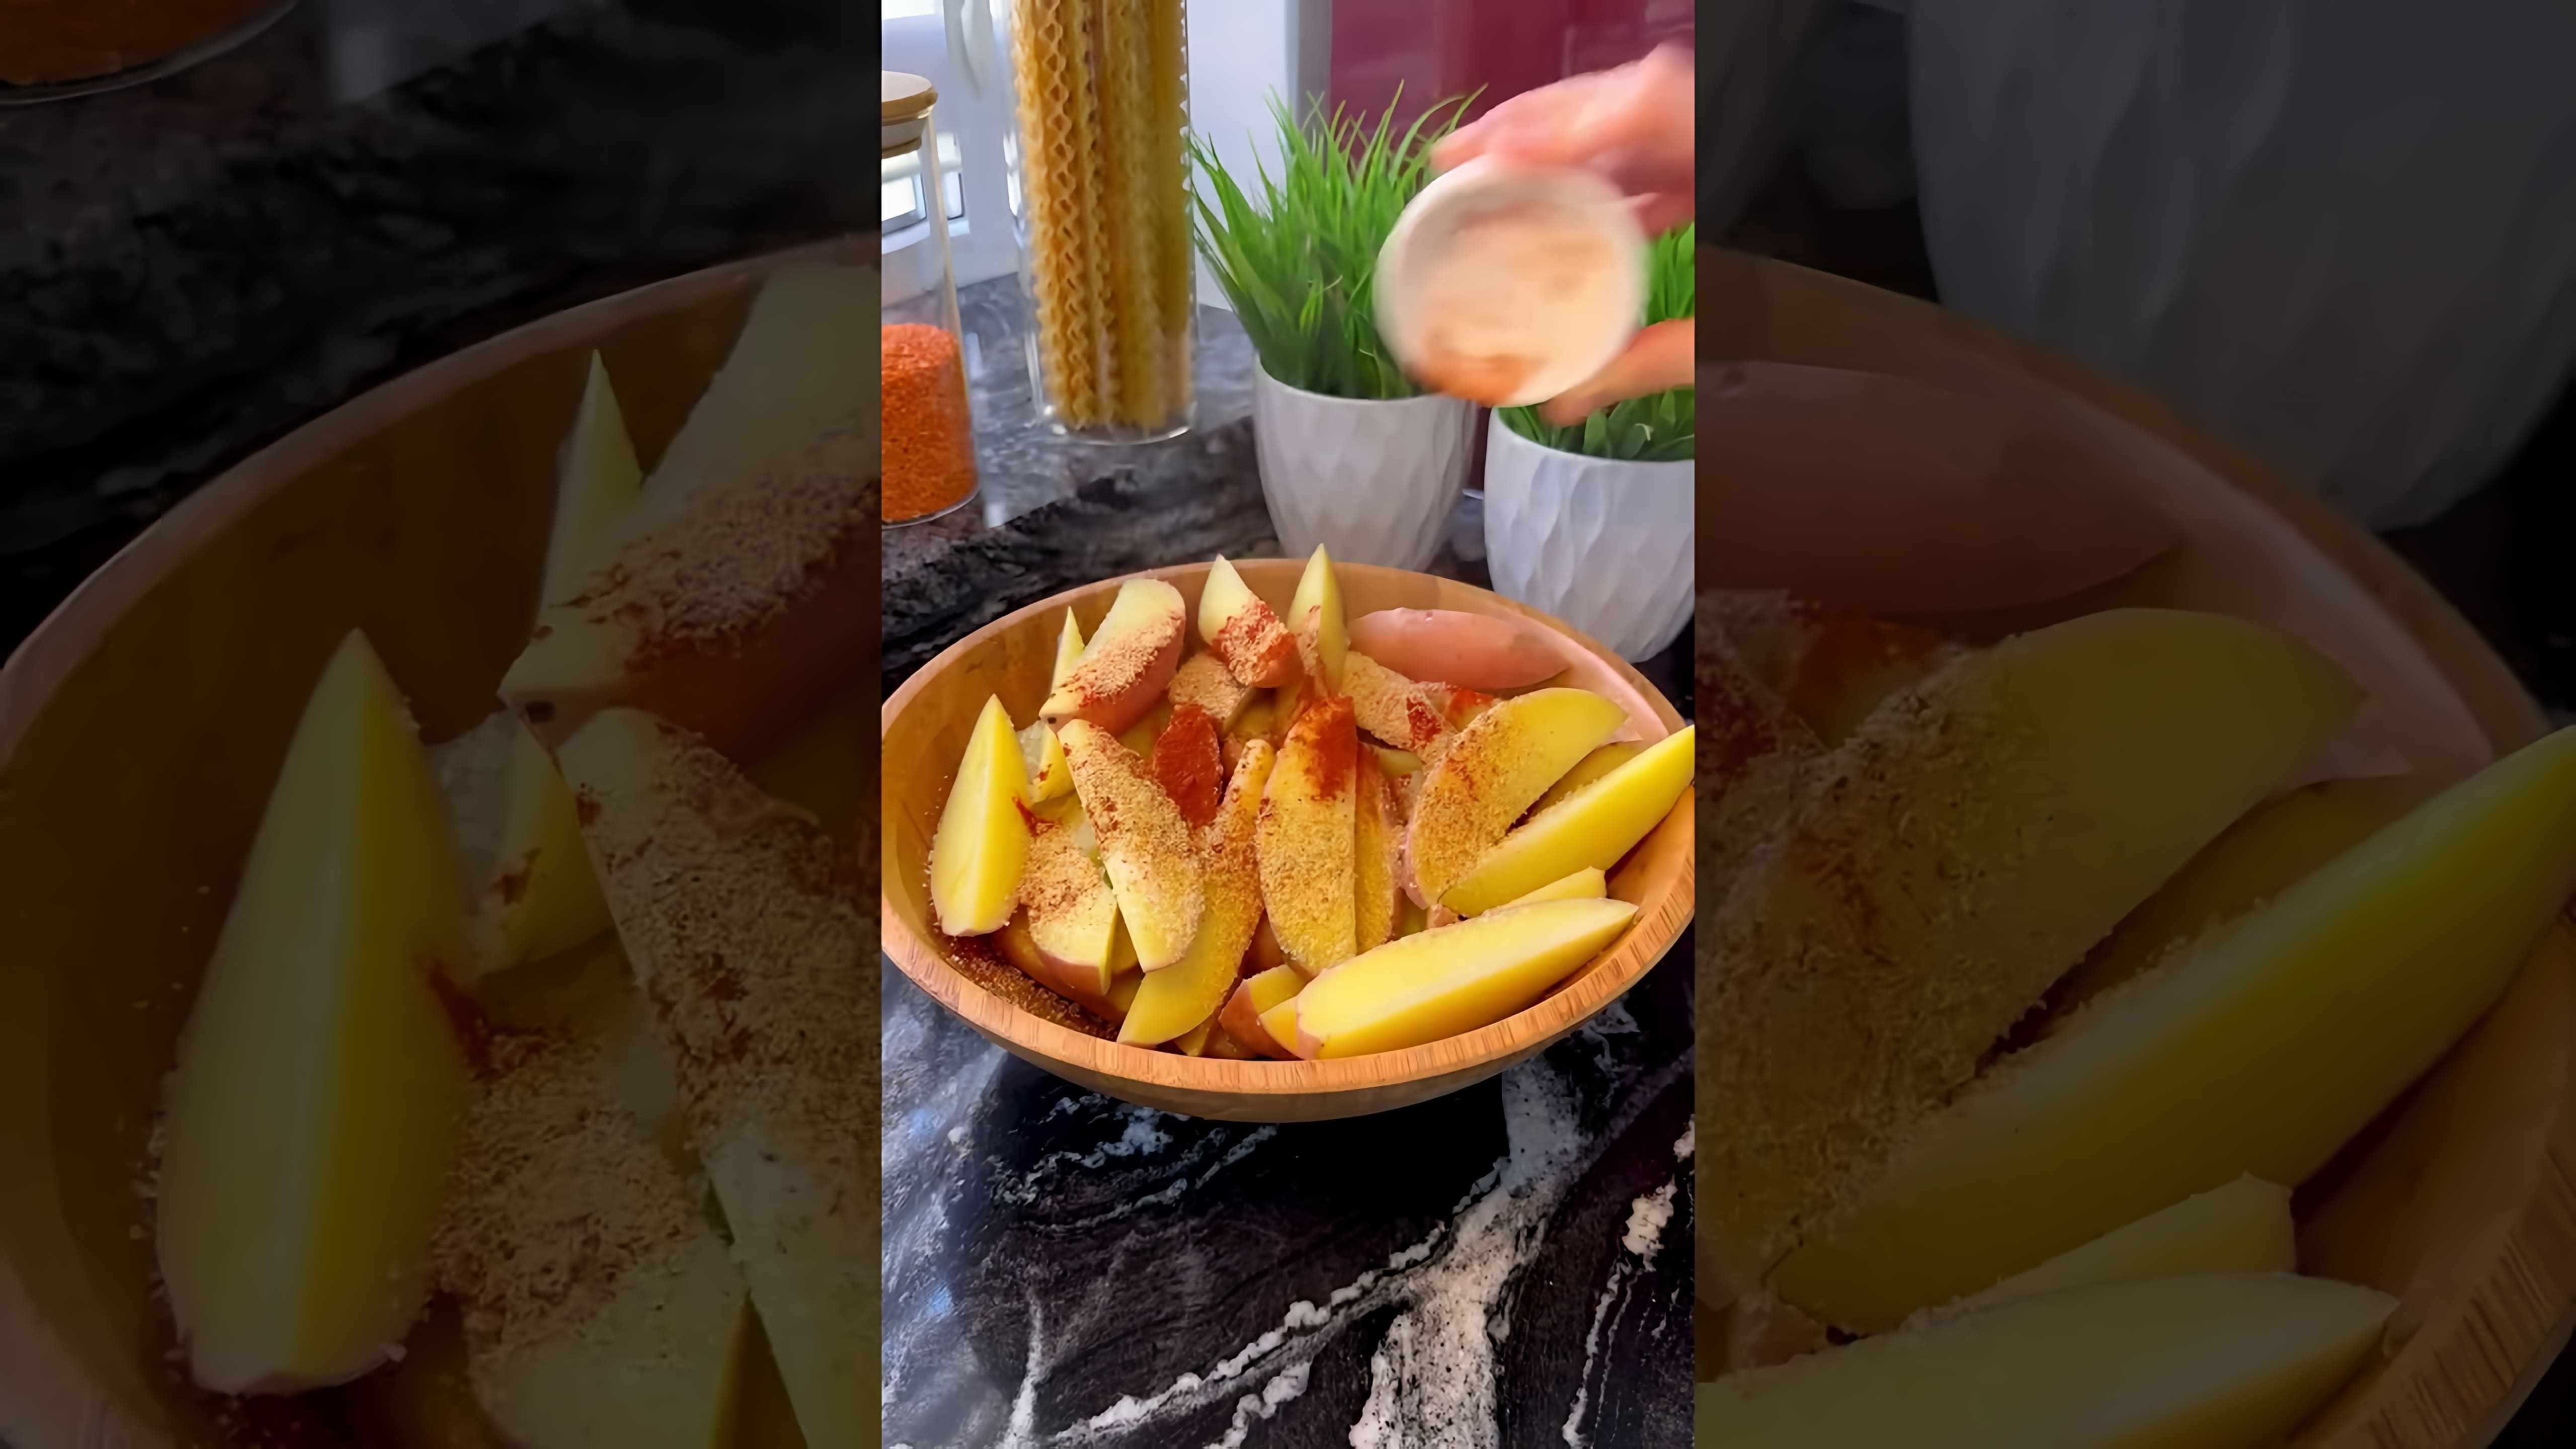 В этом видео демонстрируется рецепт приготовления картофеля по-деревенски